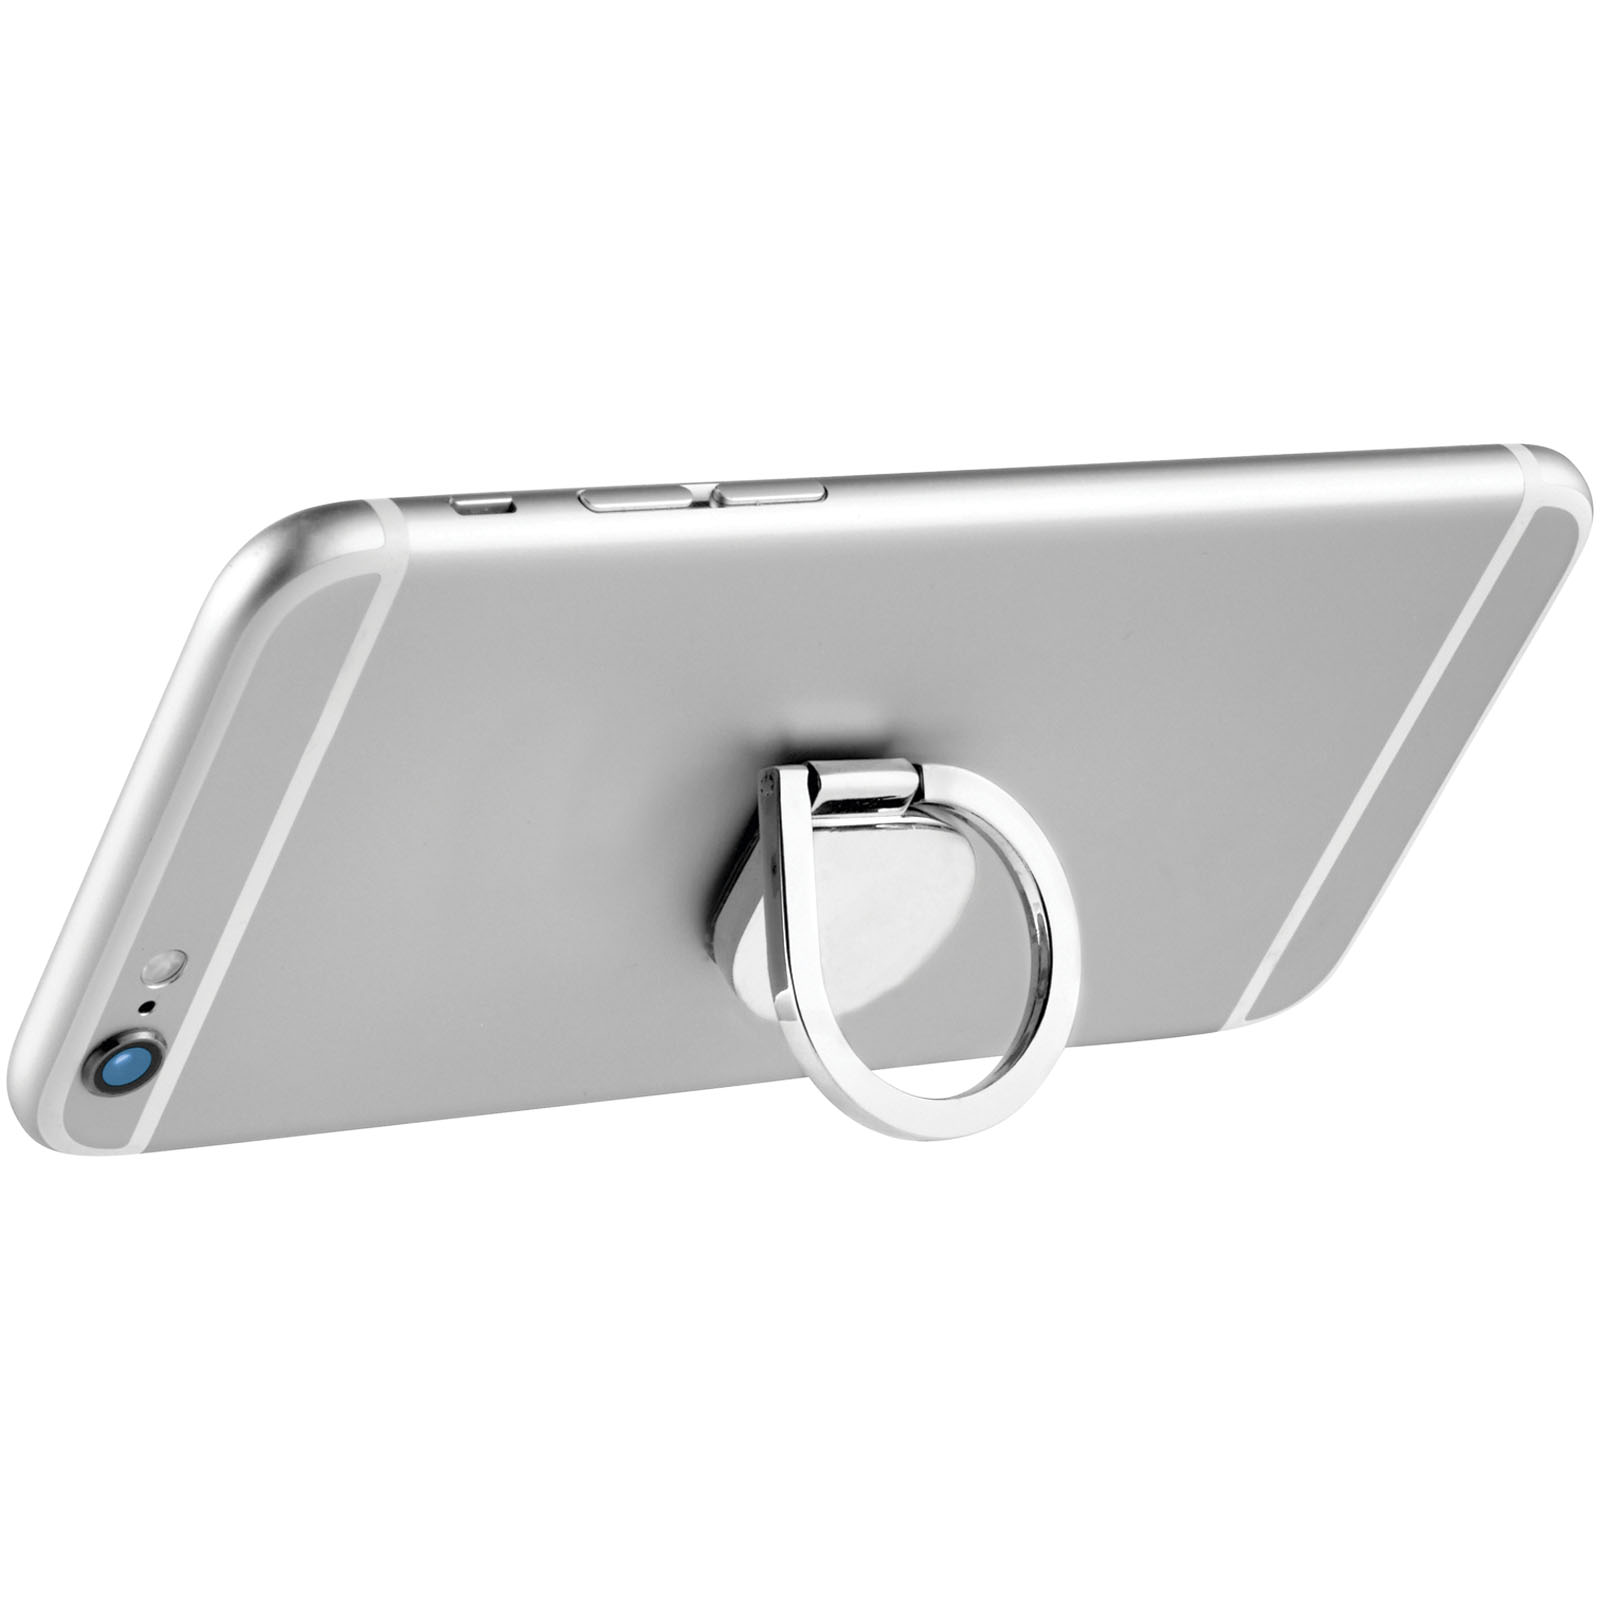 Accessoires pour téléphone et tablette publicitaires - Support de téléphone avec anneau en aluminium Cell - 0